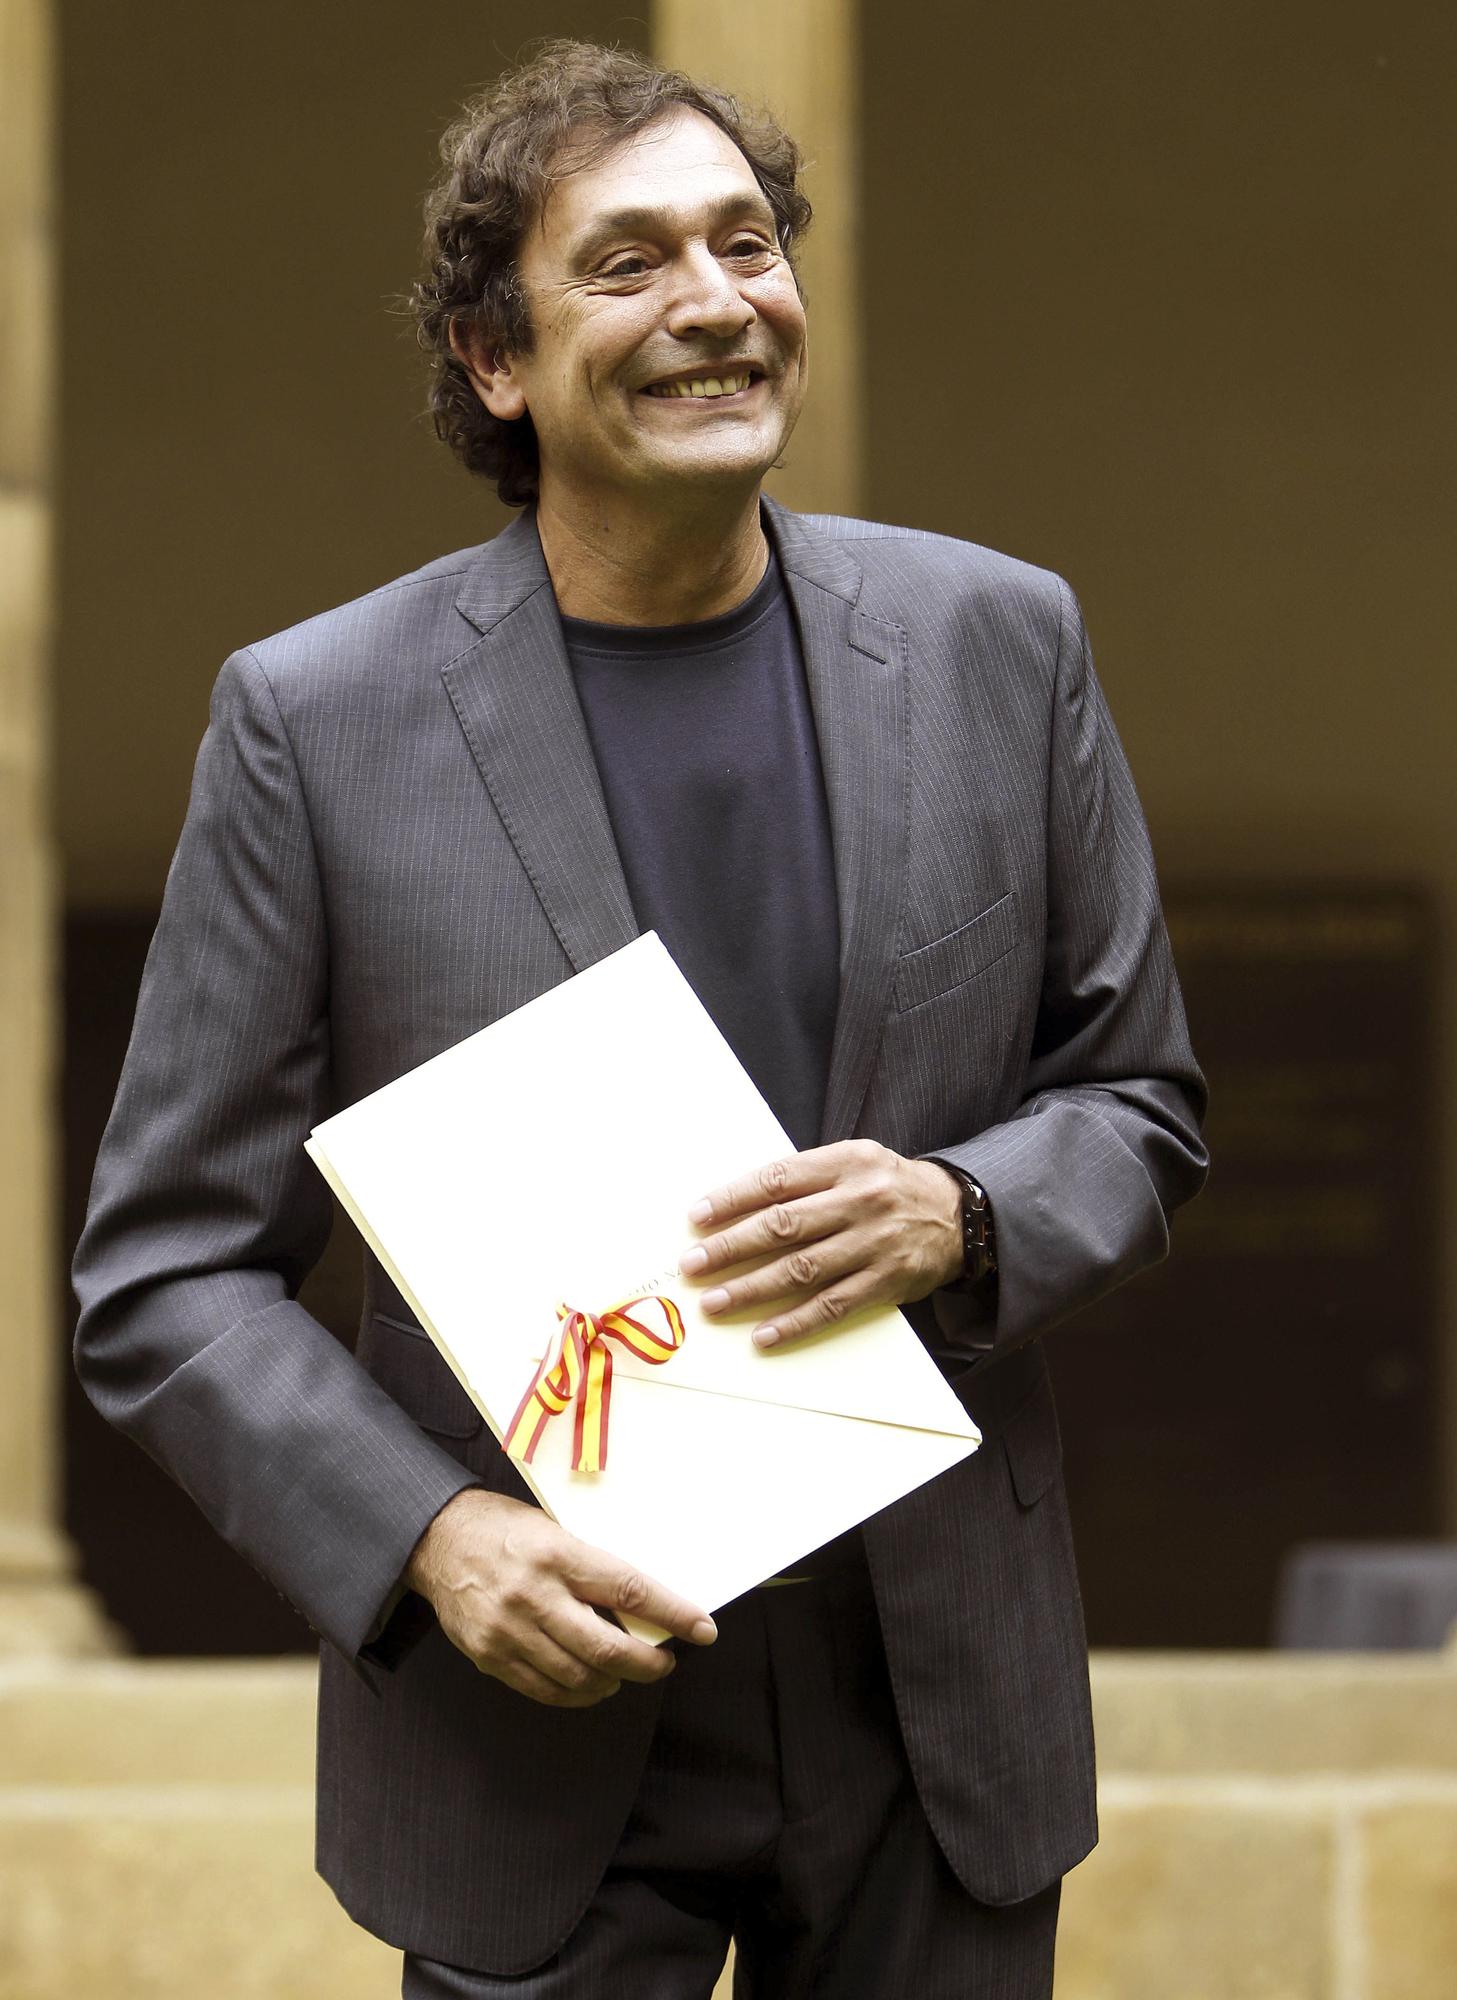 Fallece el director y guionista de cine Agustí Villaronga a la edad de 69 años